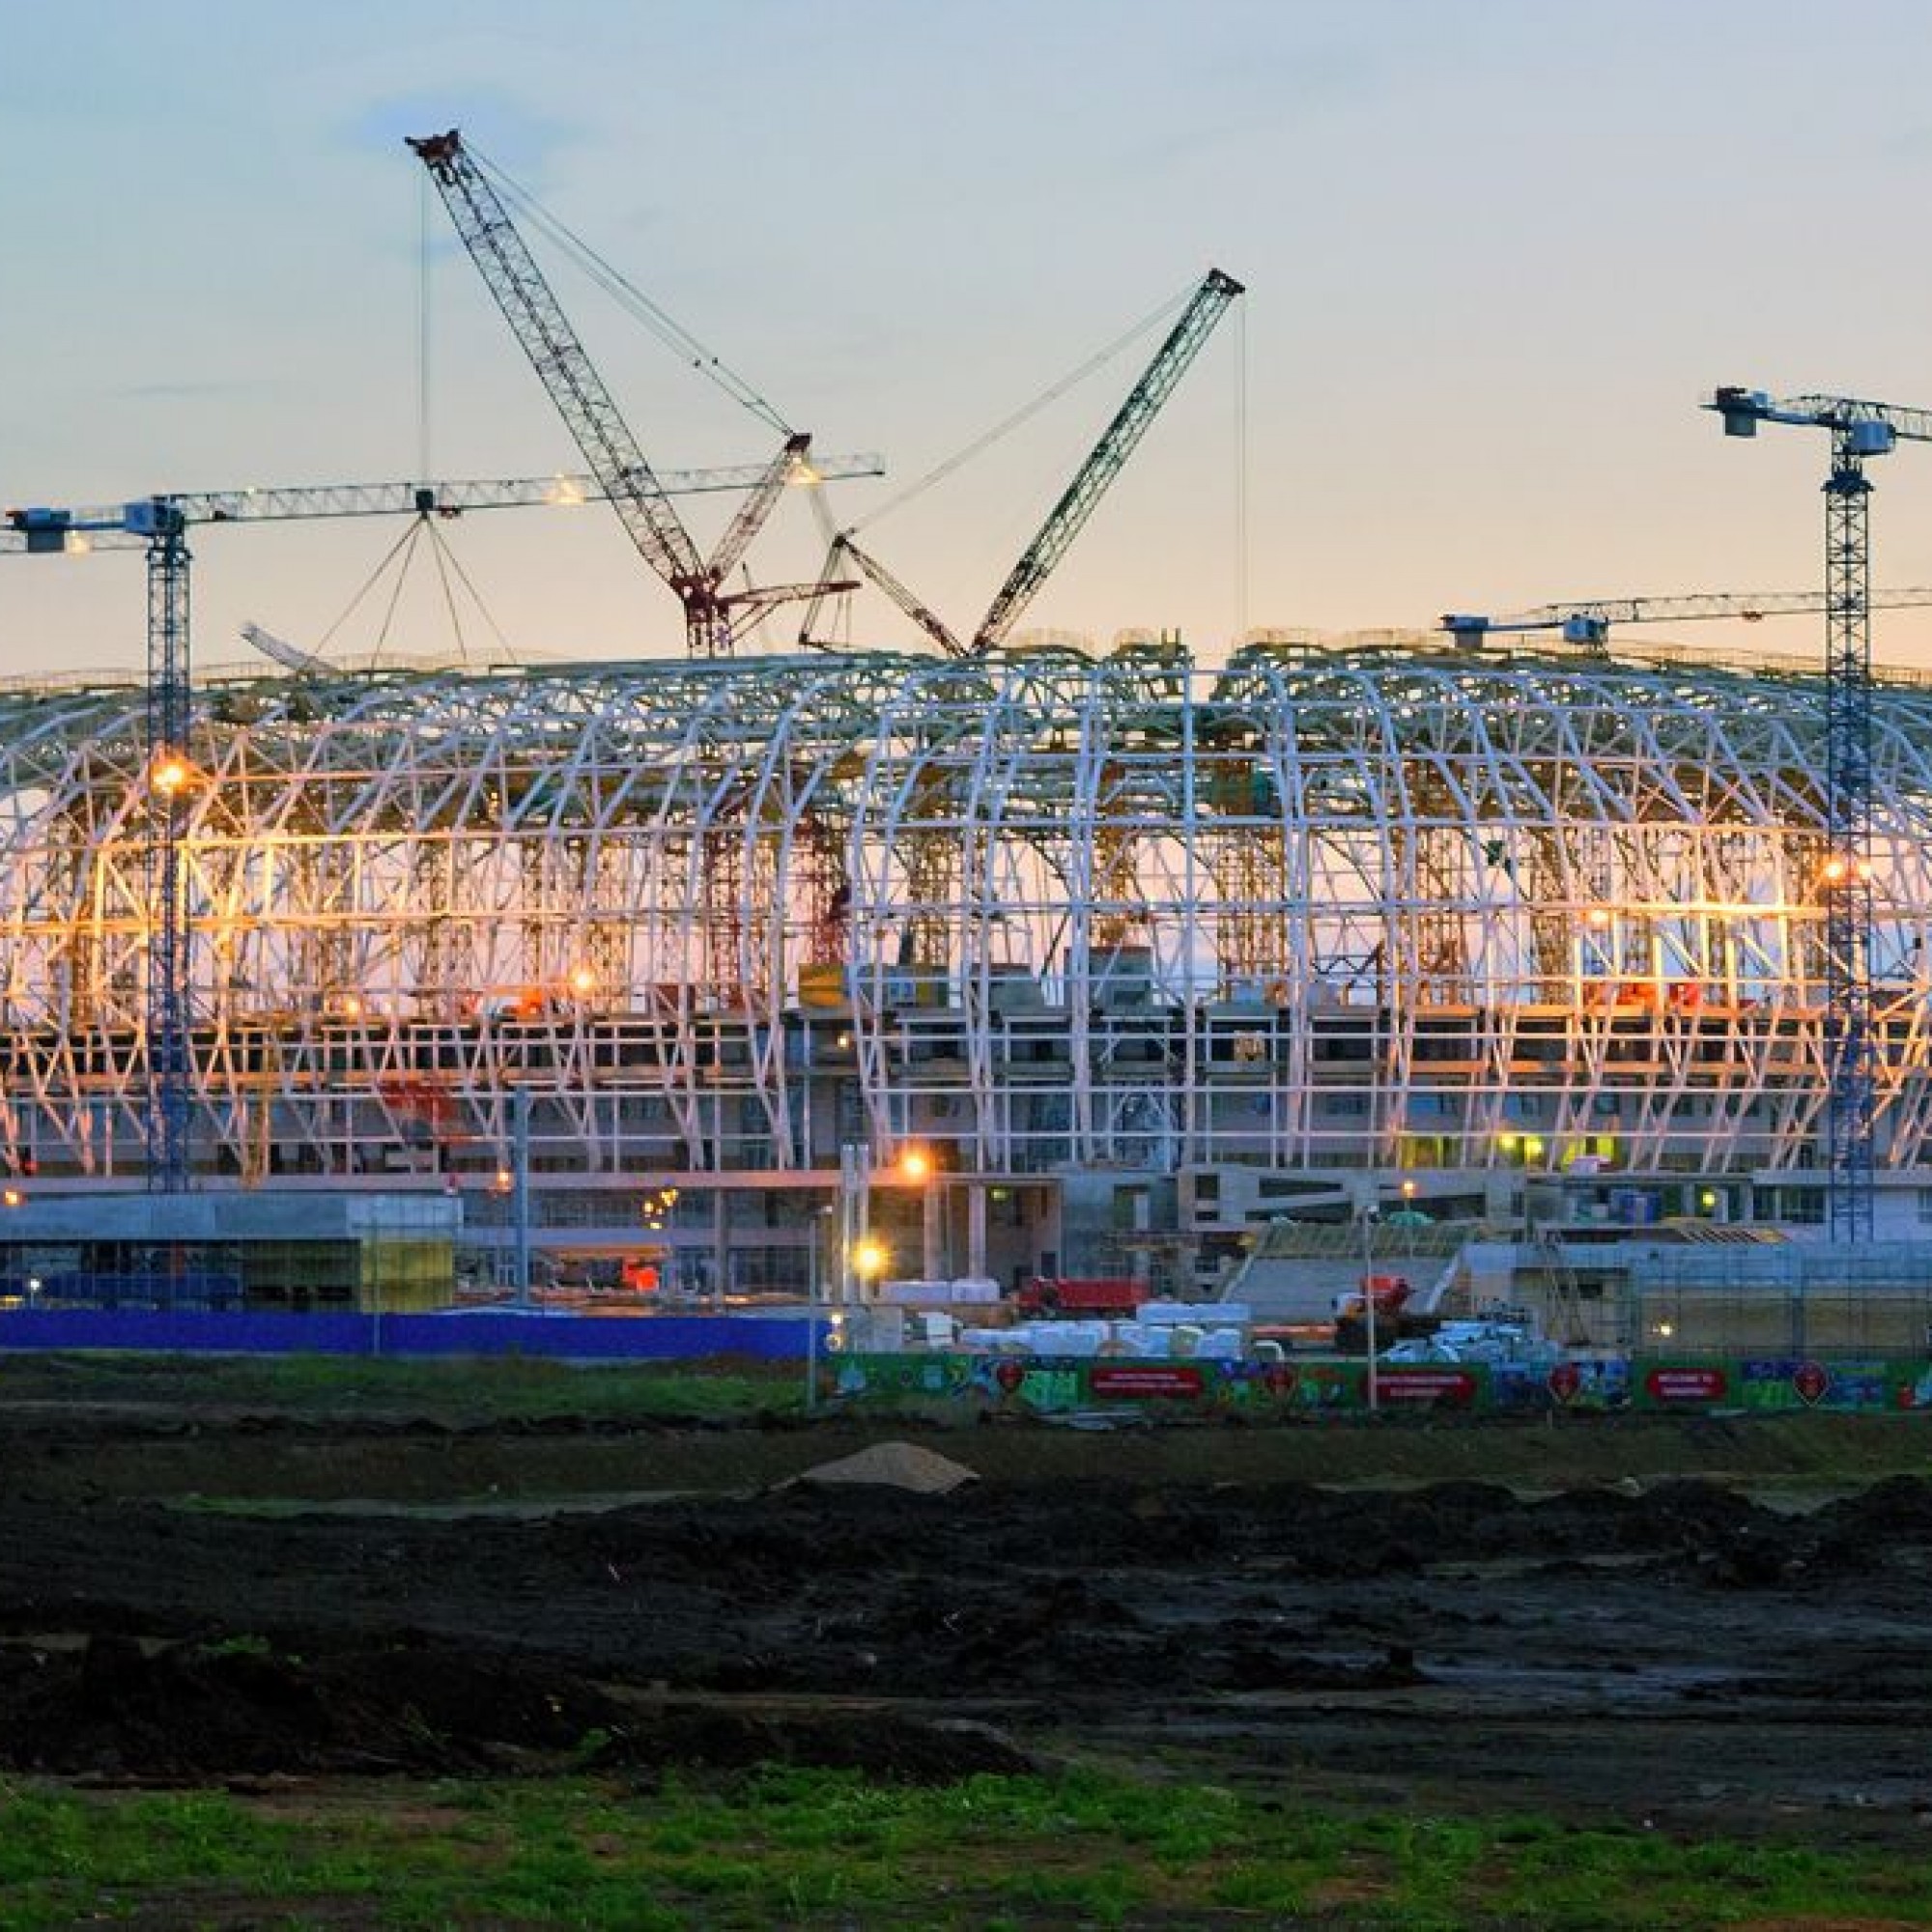 Der Entscheid zur Errichtung des Stadions wurde gefällt, bevor bekannt war, das Russland Gastgeber der WM 2018 wird.